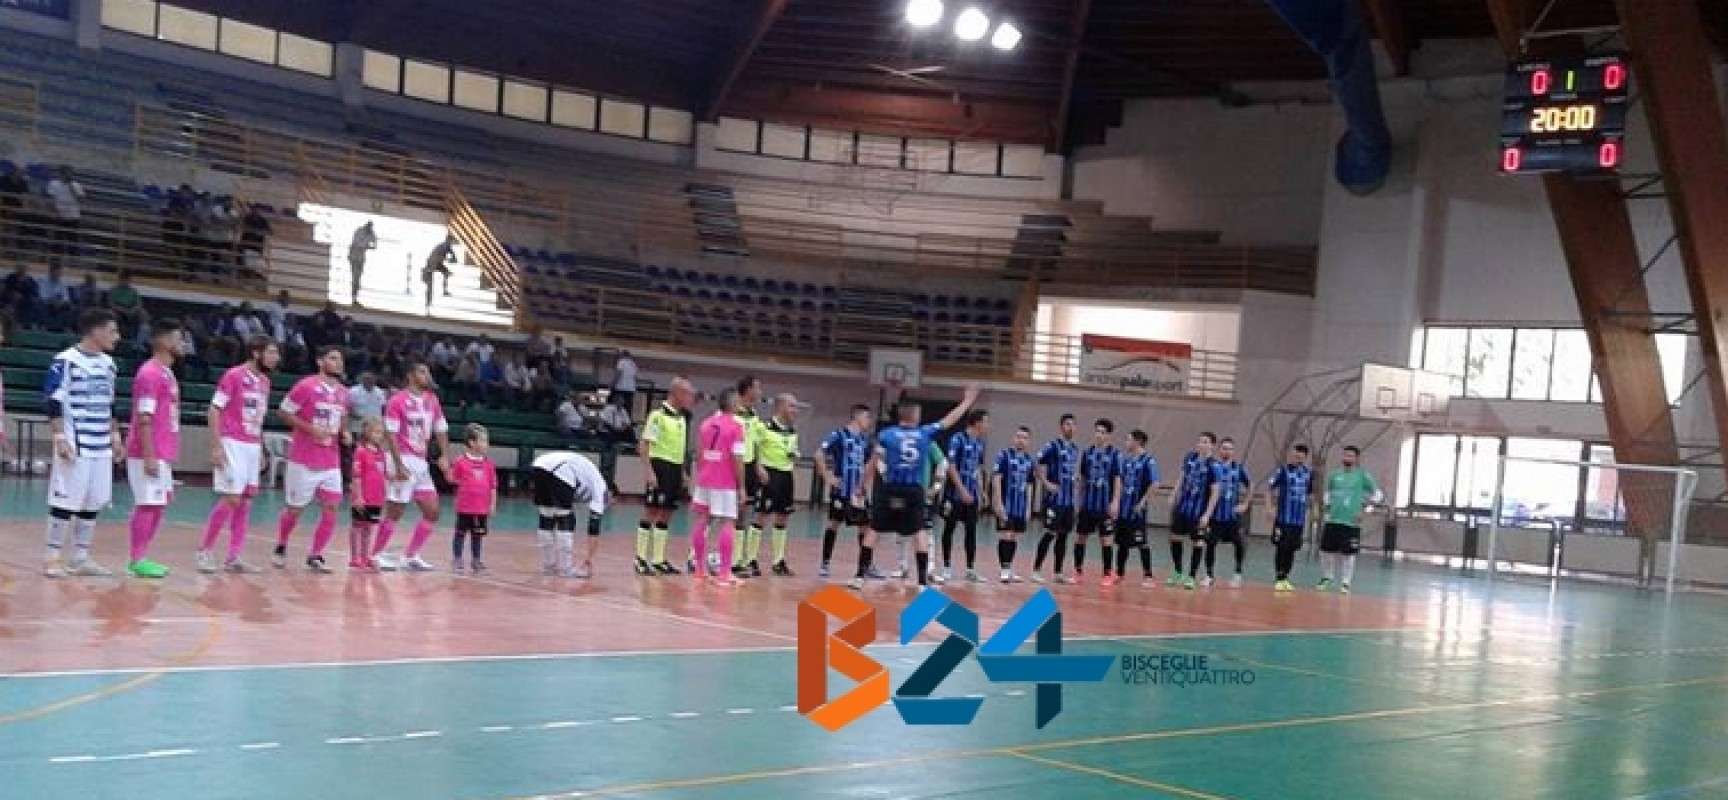 Futsal Bisceglie, grande esordio in campionato. Salinis sconfitta 5-3